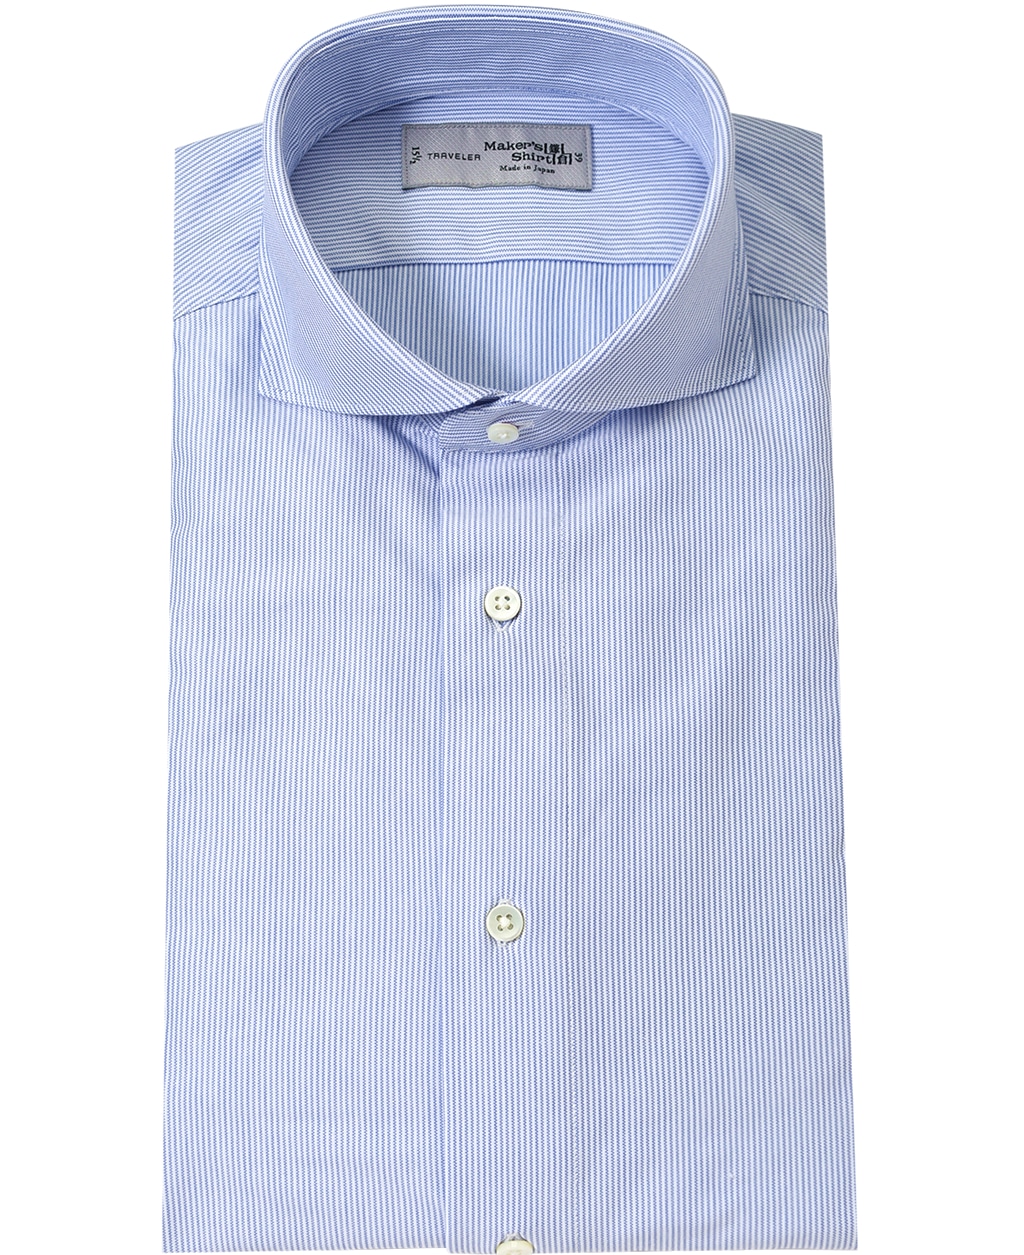 ニットシャツ(37 (S) ブルー系): メンズ | メーカーズシャツ鎌倉 公式通販 | 日本製ワイシャツ ネクタイ ブラウス